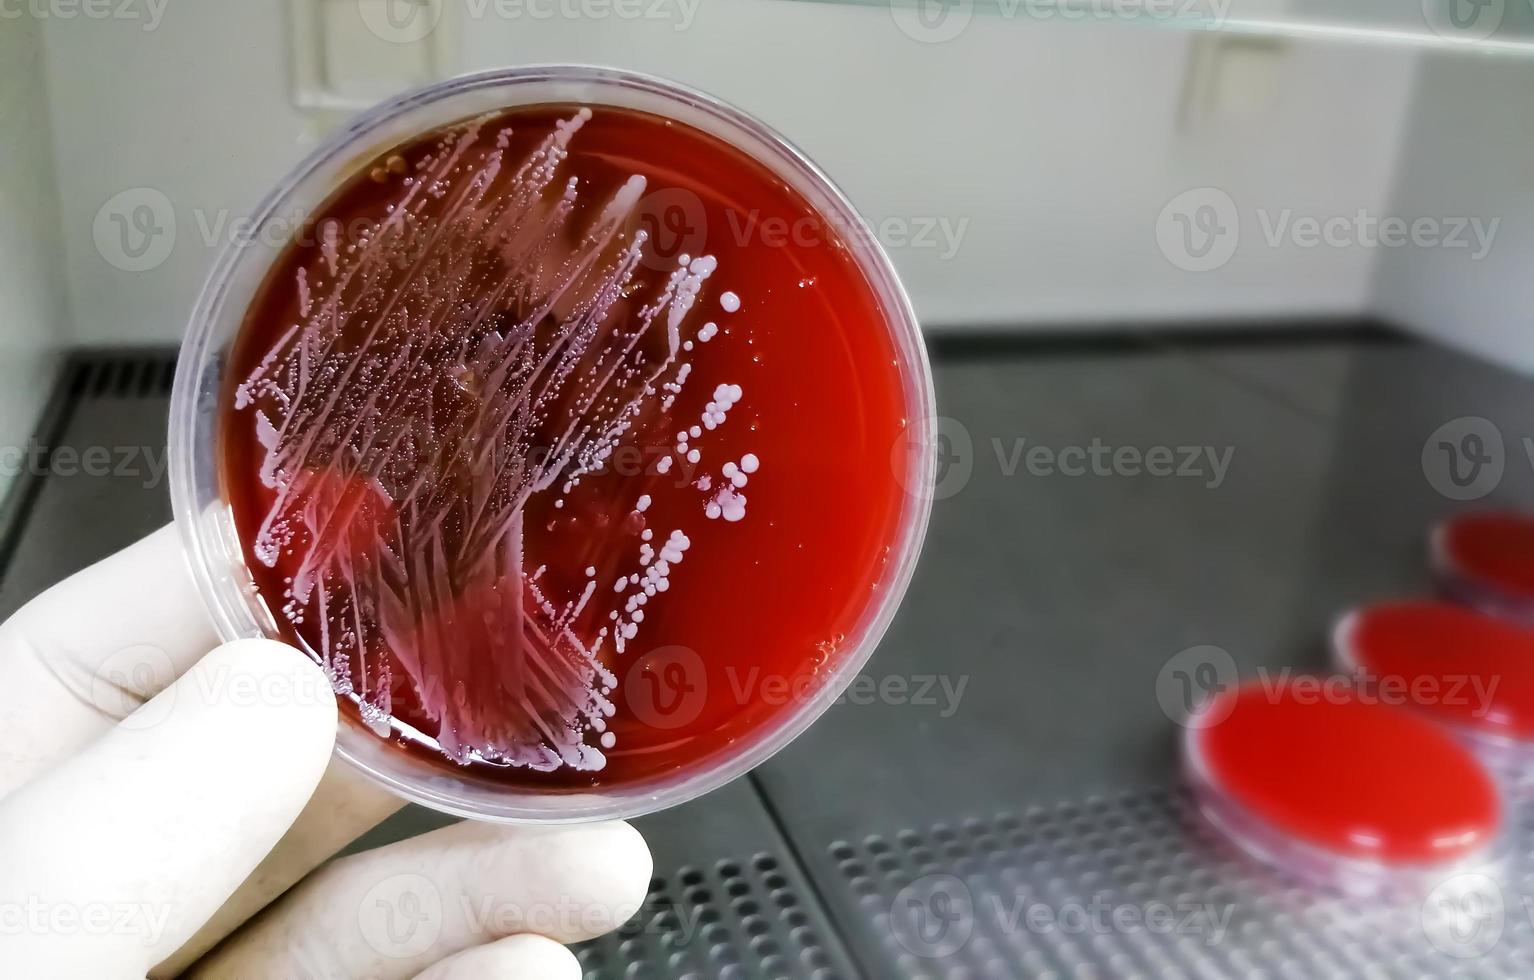 staphylococcus aureus, gram positivo, a gram variable, inmóvil, coco, beta hemólisis, bacteria saprotrófica que pertenece a la familia de los estafilococos crecimiento en agar sangre. foto